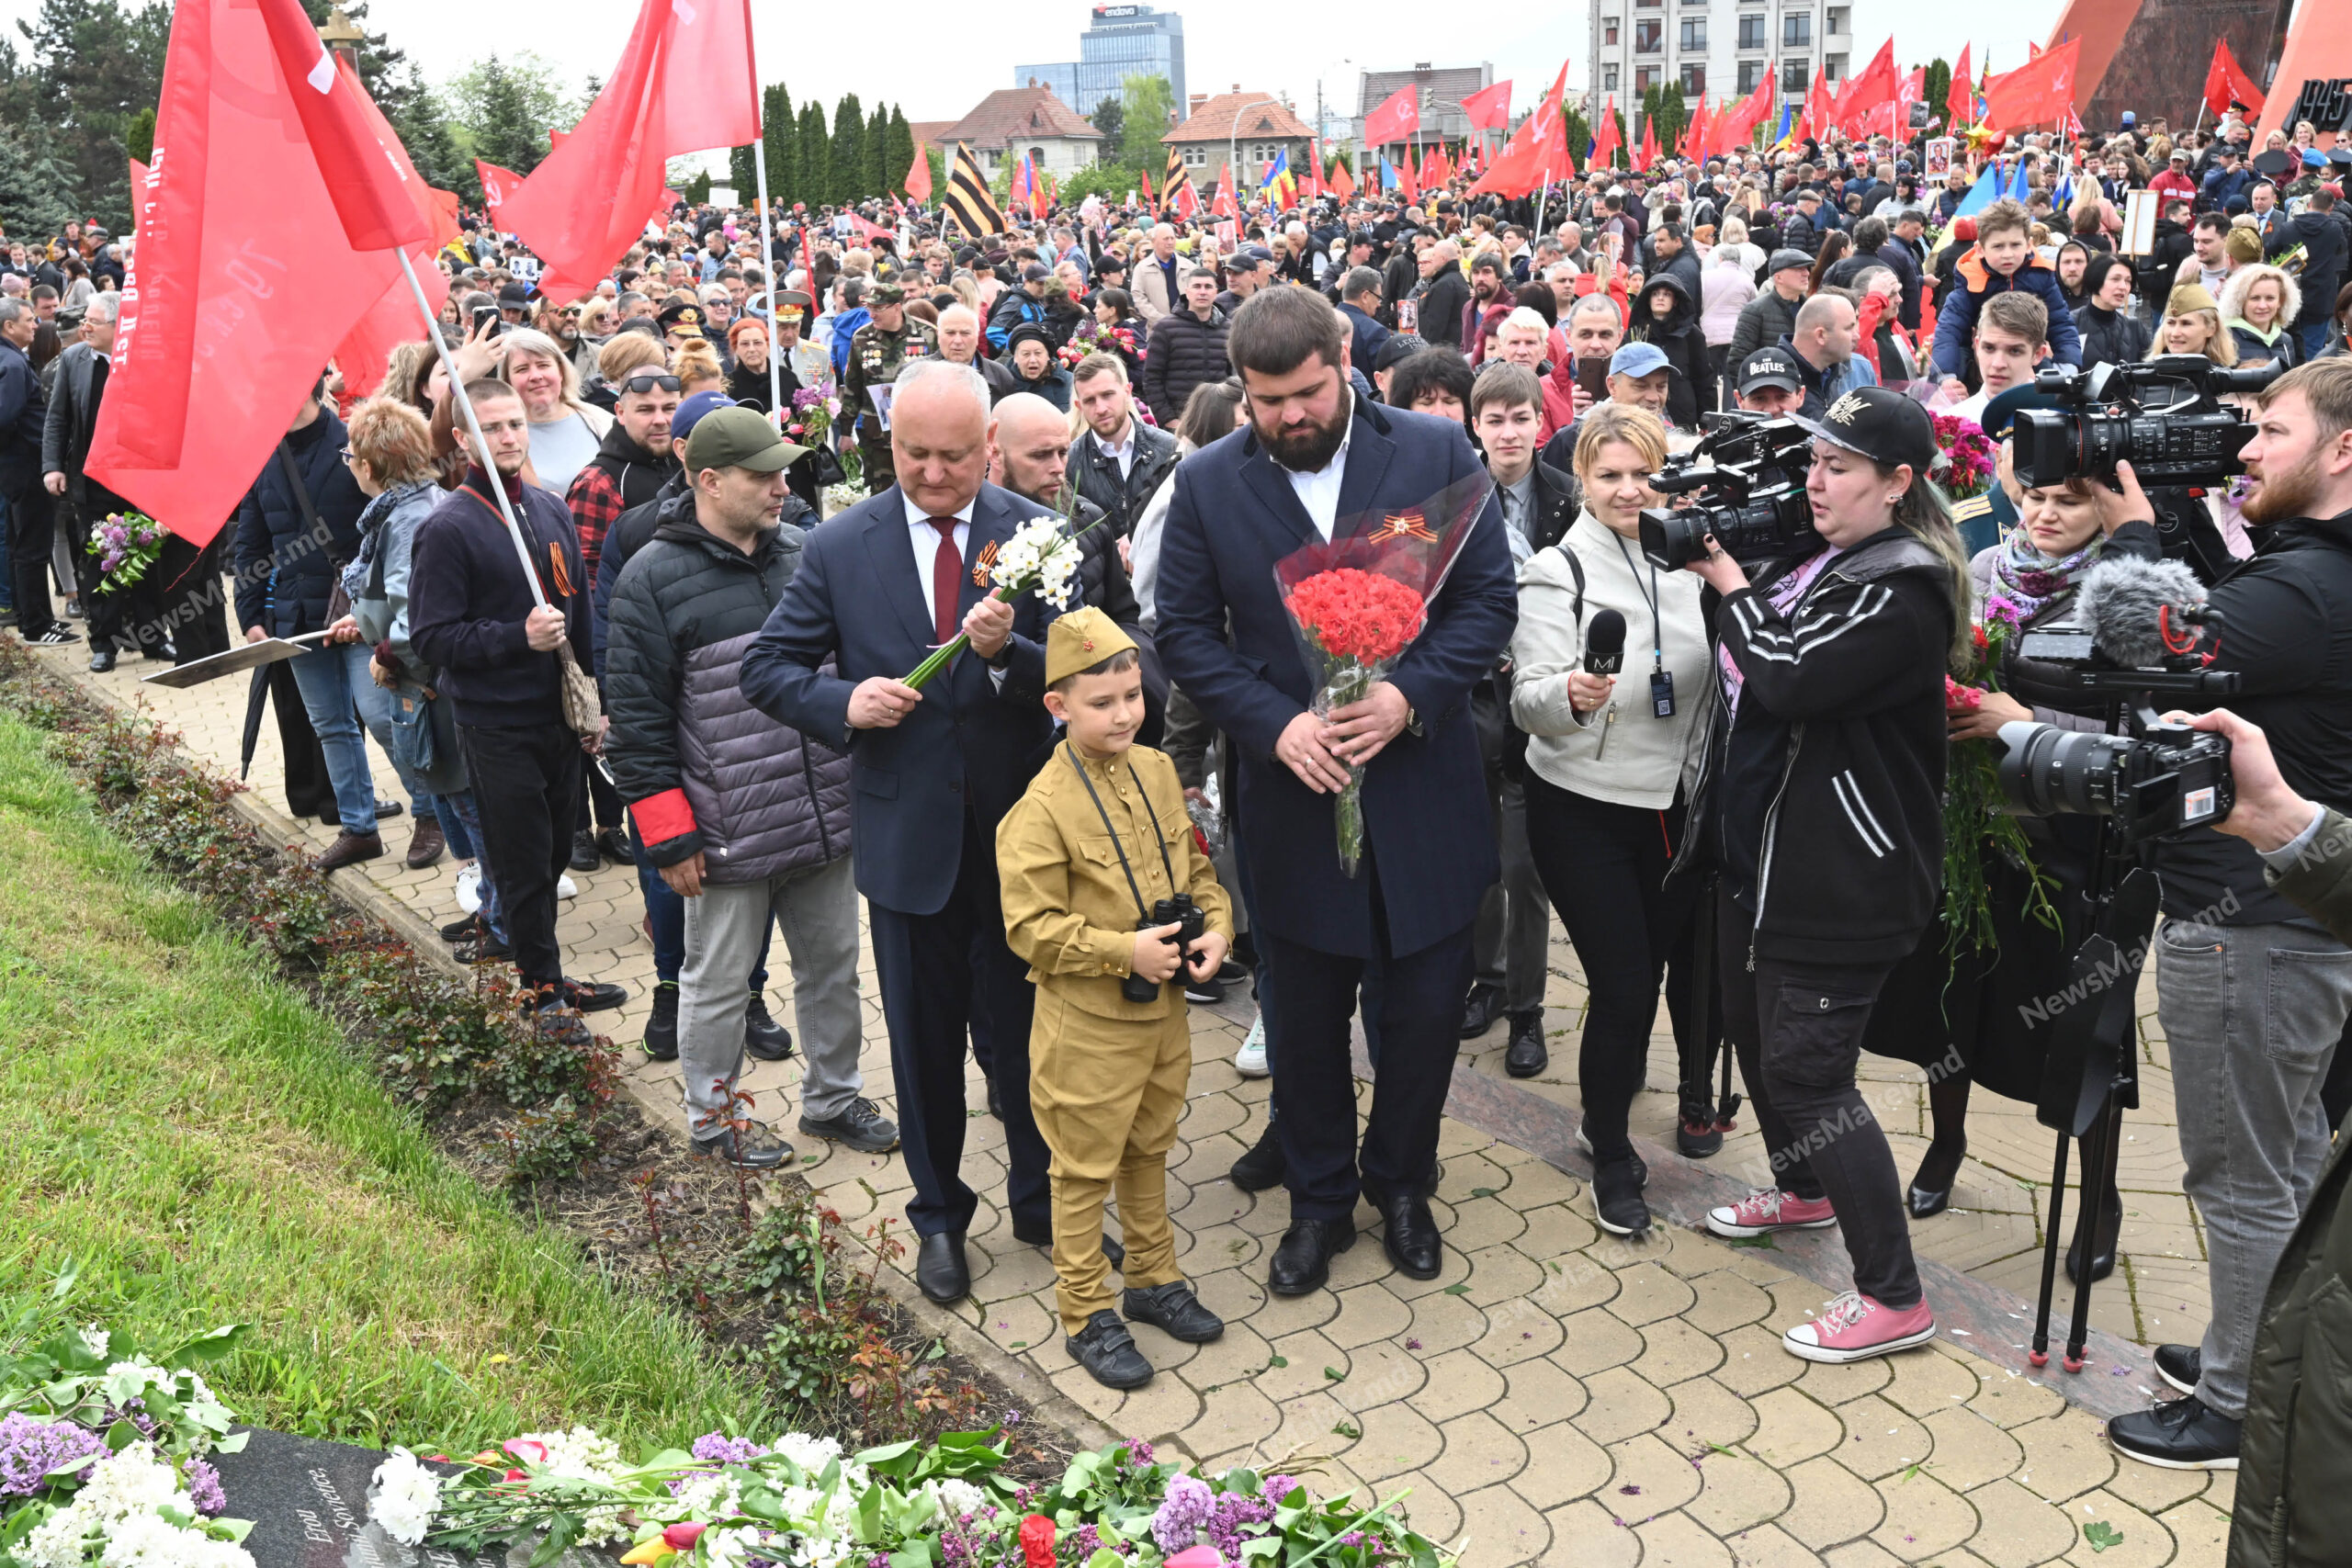 Panglici interzise, Stalin, baloane și nostalgie sovietică. 9 mai la Chișinău - FOTOREPORTAJ